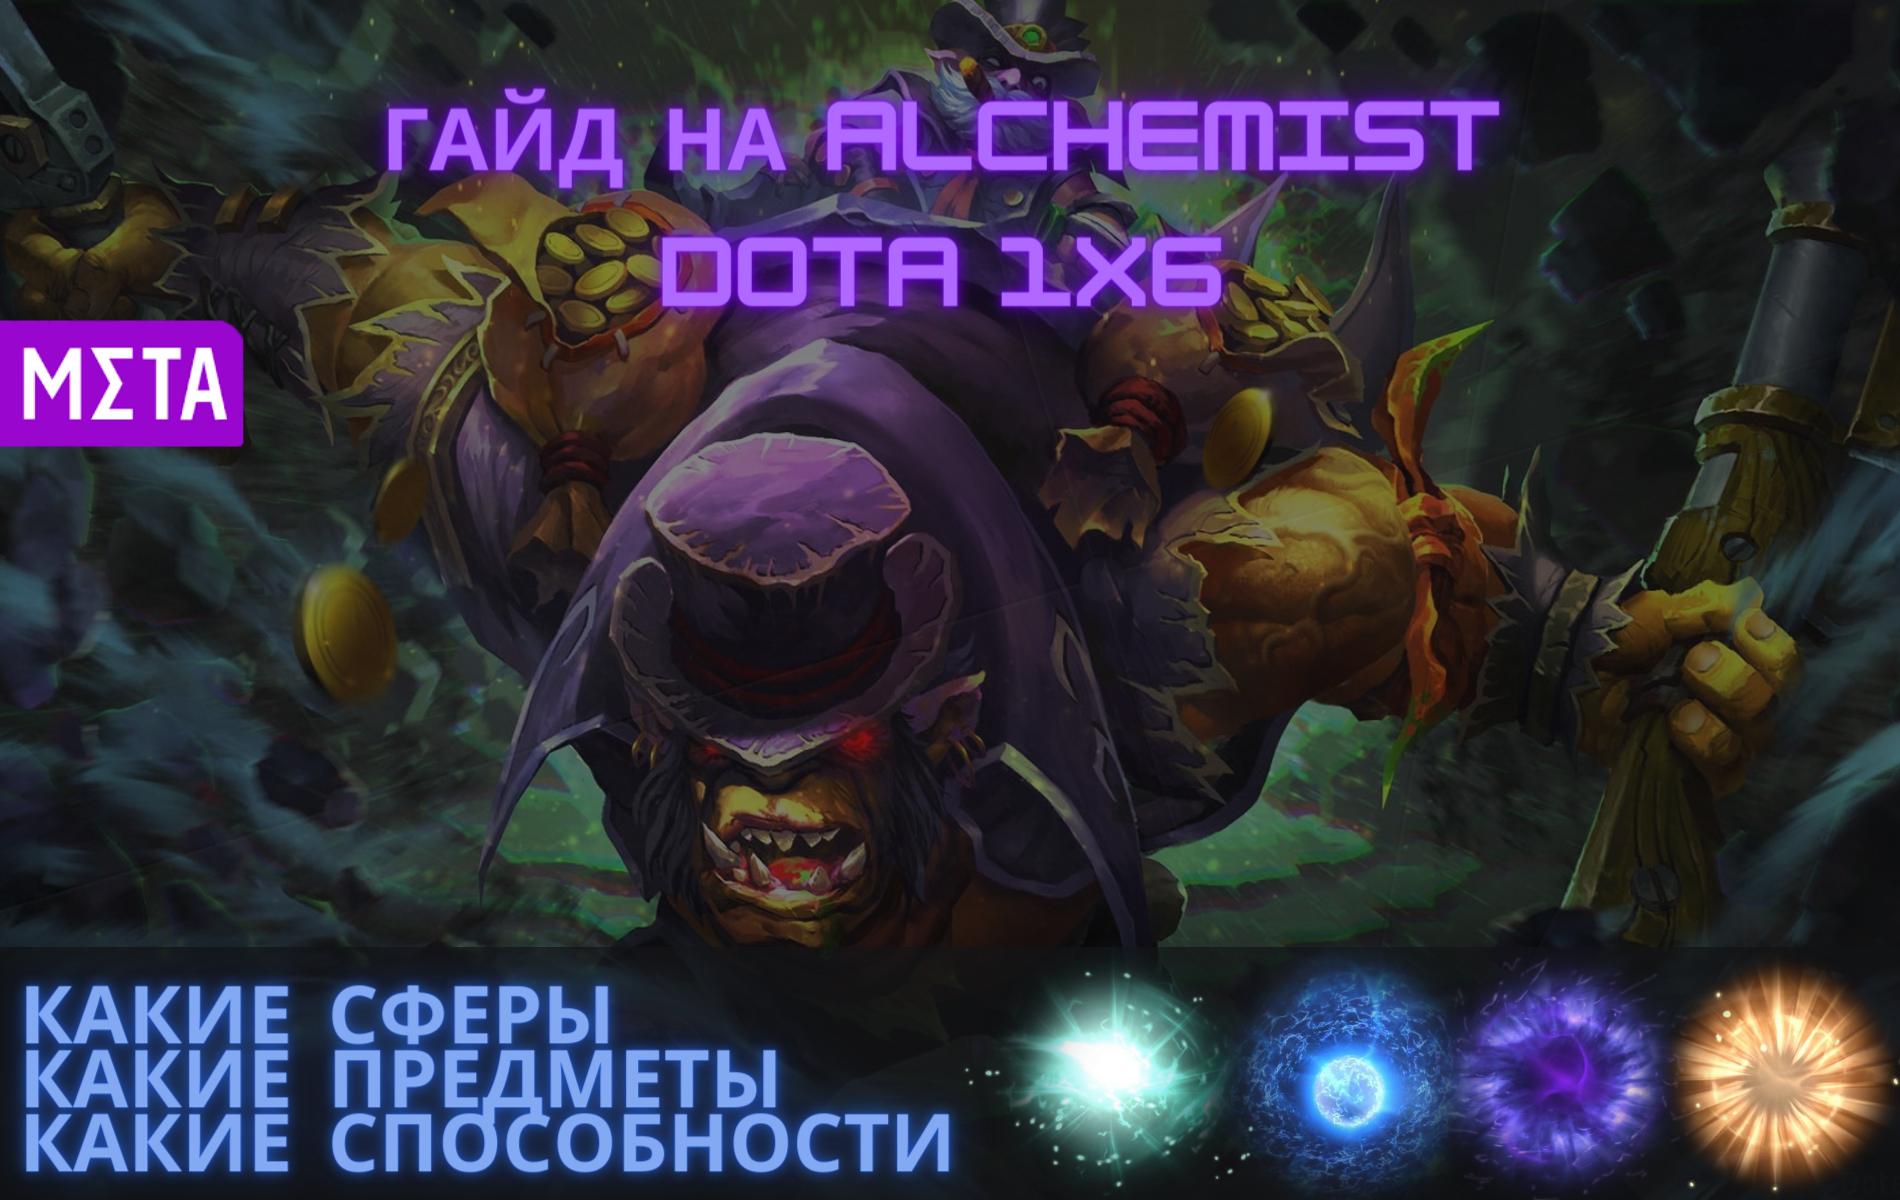 Гайд на Alchemist в Dota 1x6